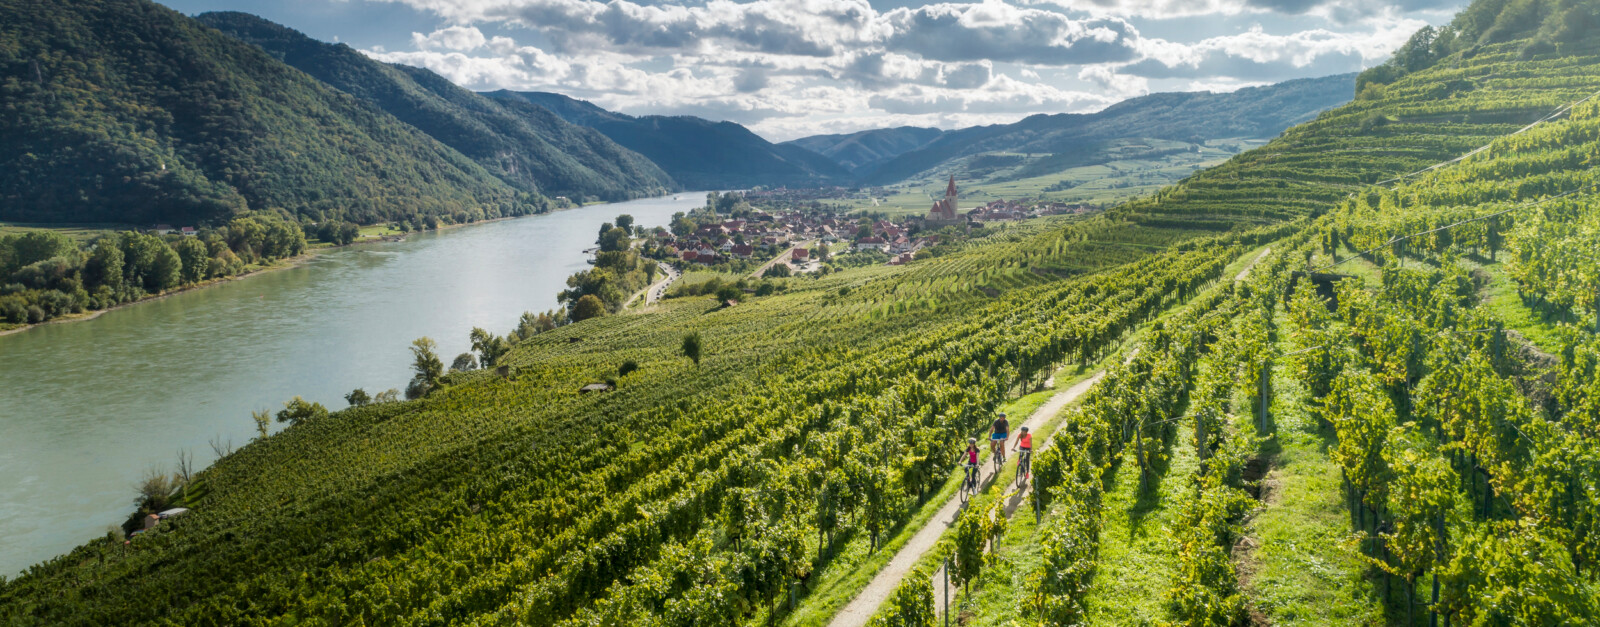 Odia rigidez Señal En bicicleta por Austria - del danubio a la region del vino